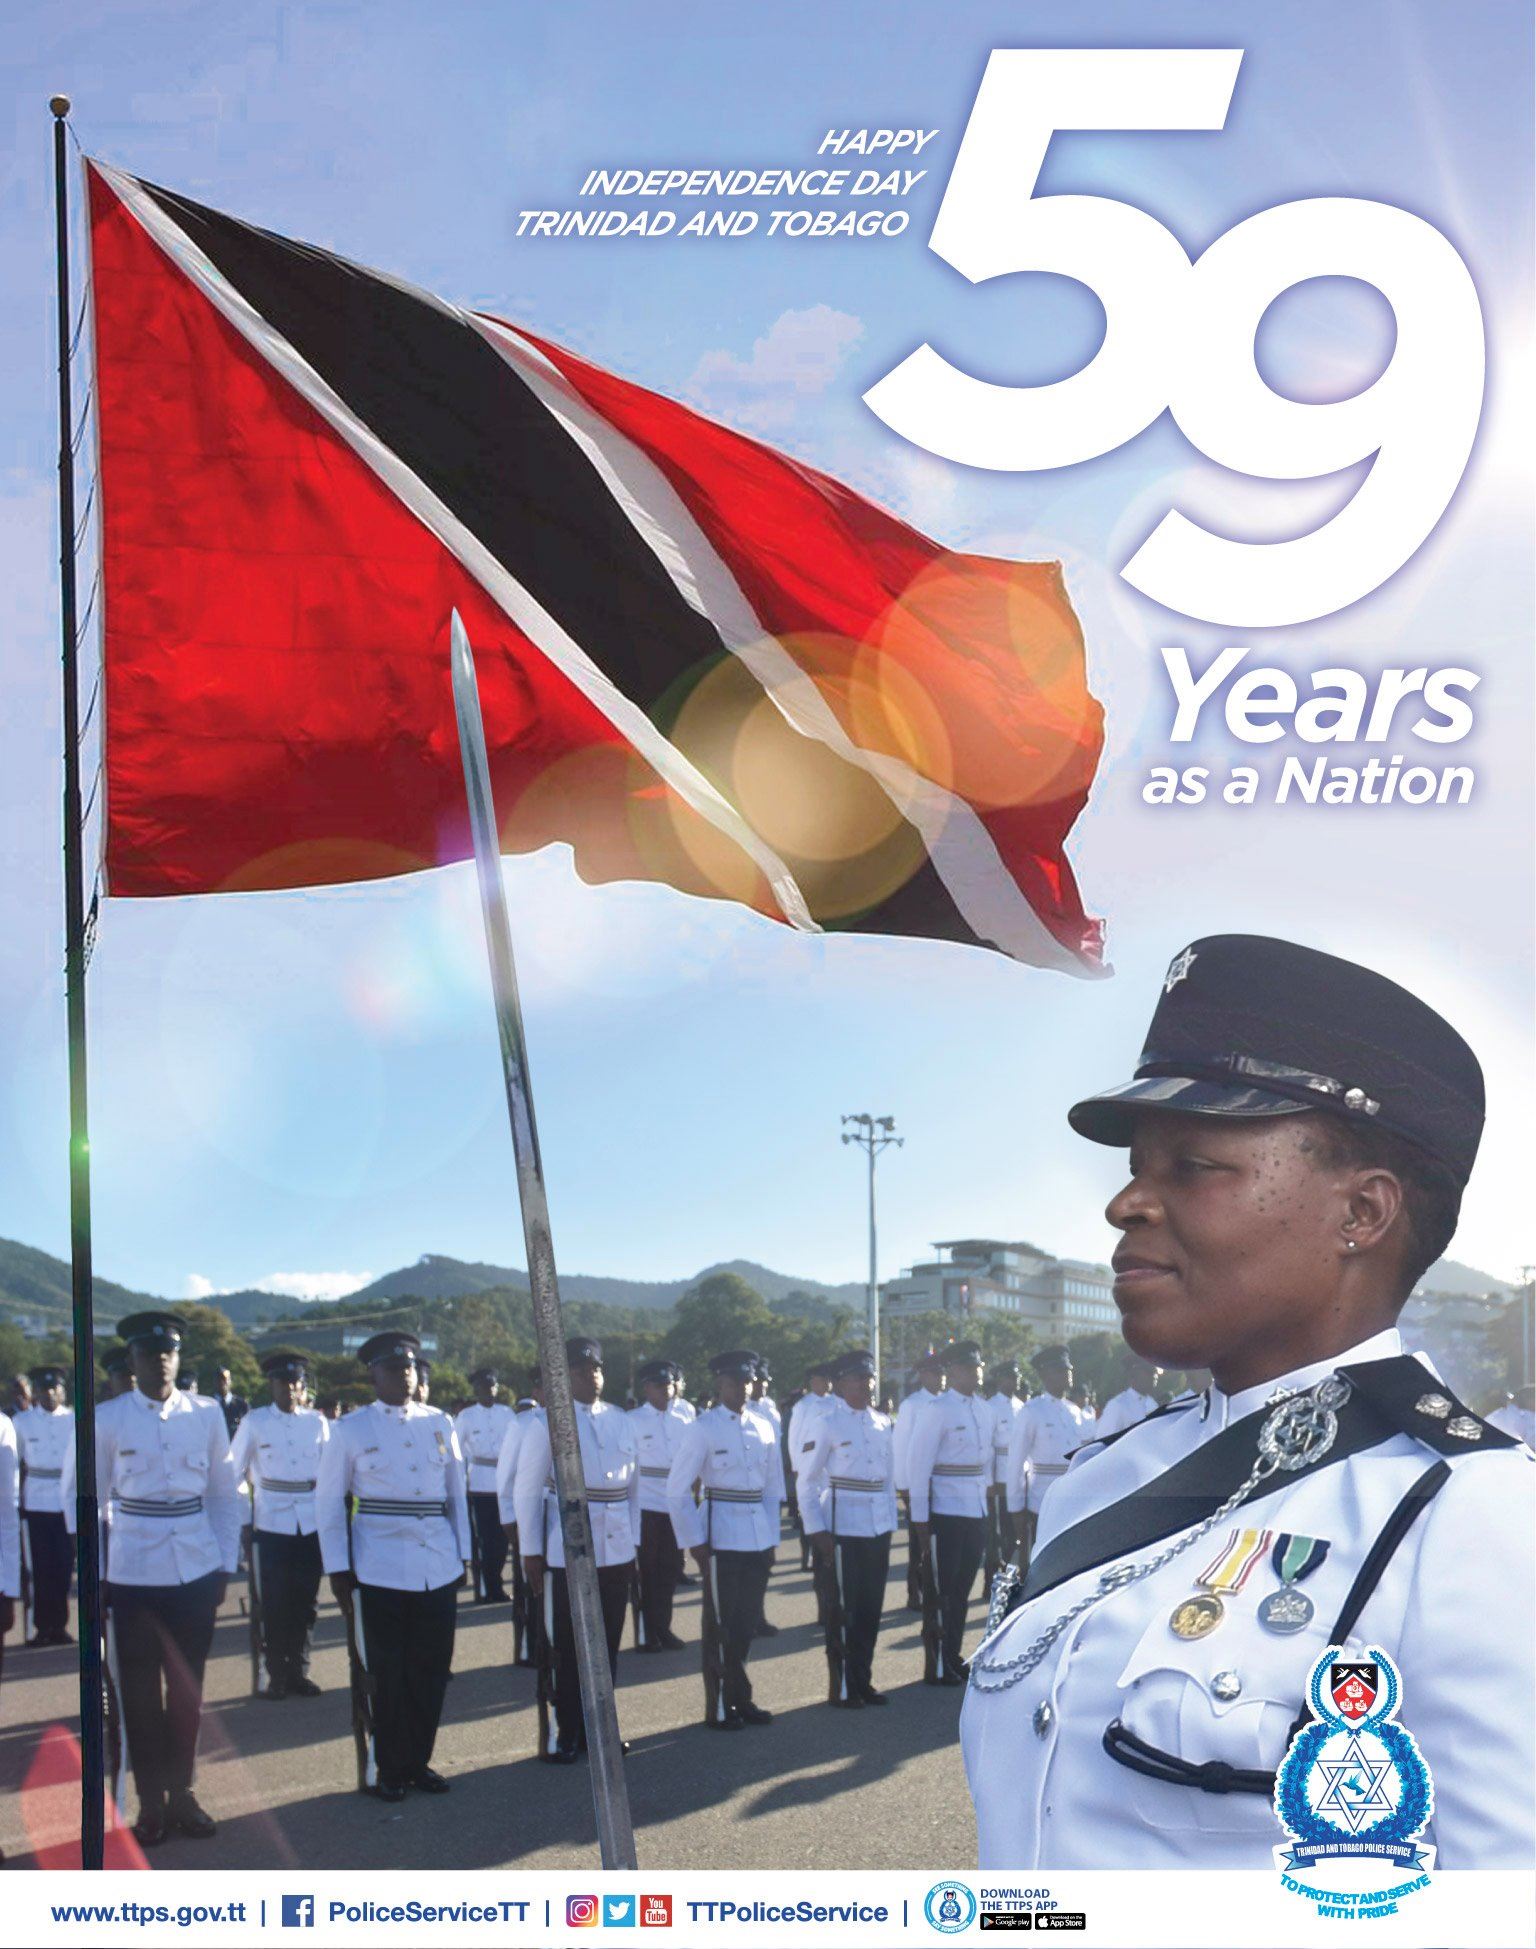 Плакат с полицией Тринидада и Тобаго в честь 59-го юбилея независимости, 31 августа 2021 г.